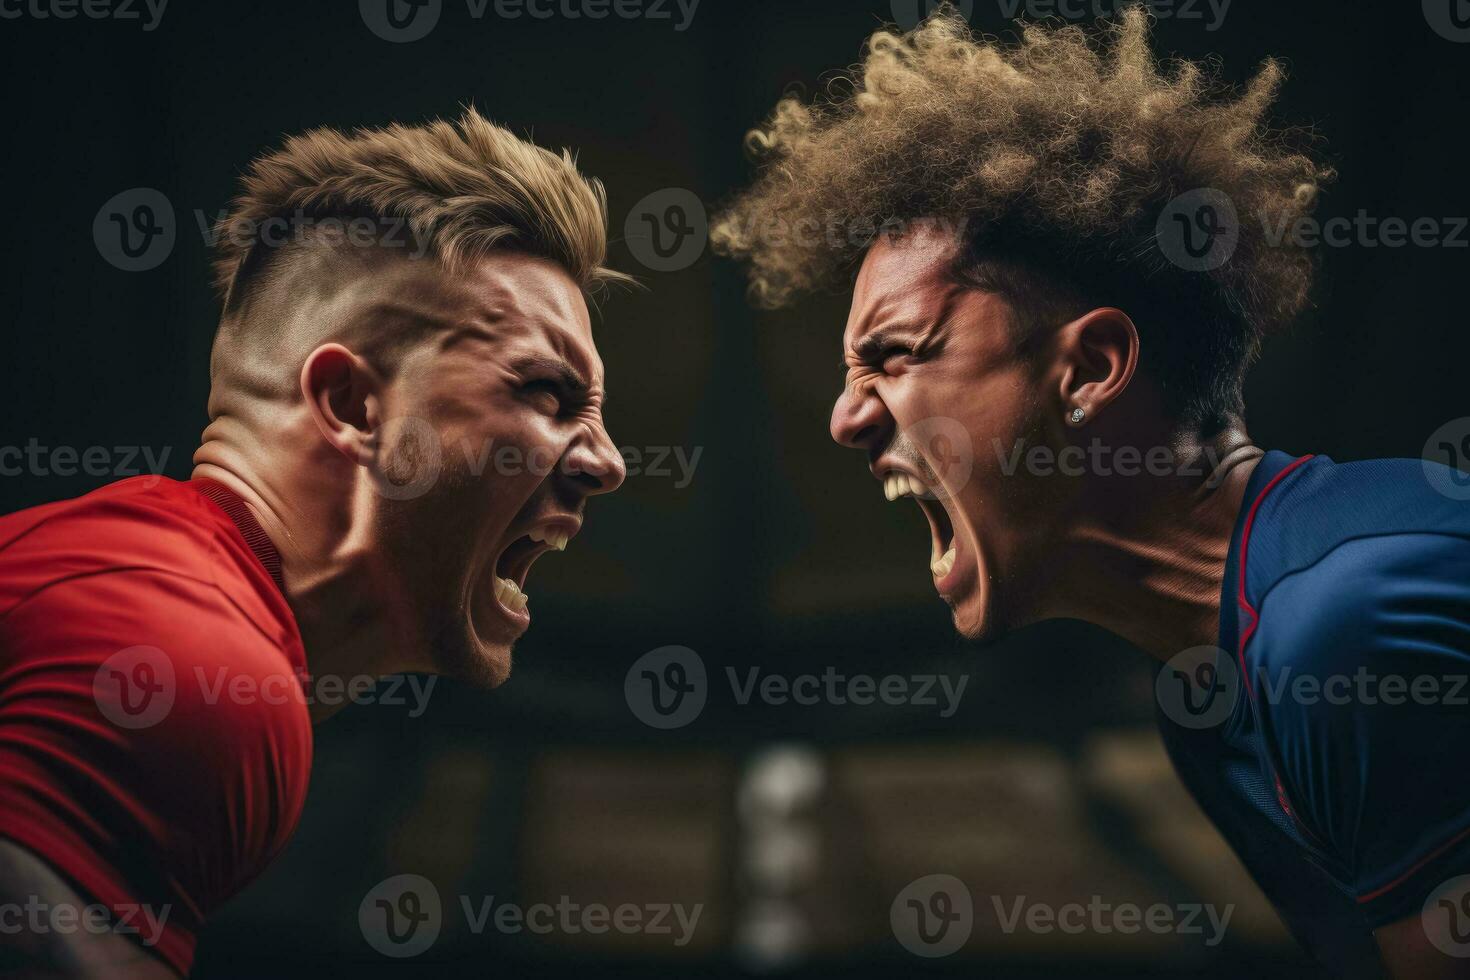 närbild av en röd i ansiktet idrottare skrikande och pekande aggressivt på en rival spelare uttrycker intensiv ilska under en konkurrenskraftig spel foto